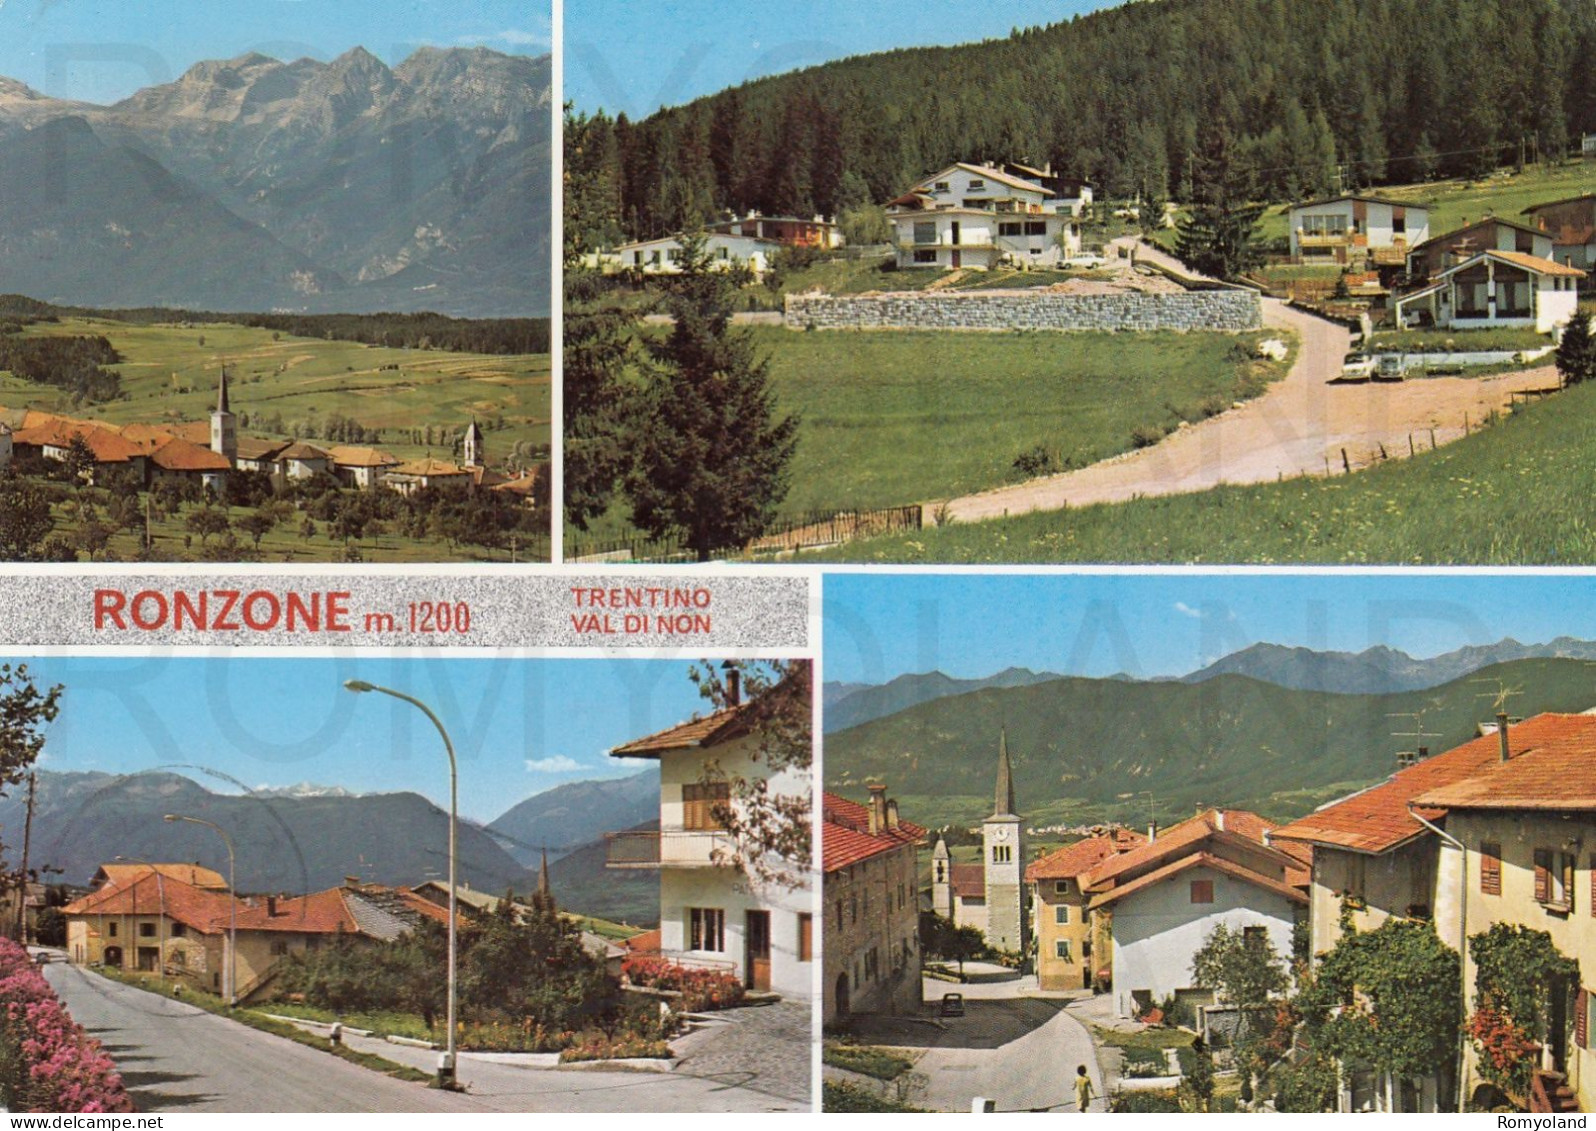 CARTOLINA  C14 RONZONE M.1200,TRENTO,TRENTINO ALTO ADIGE-AL DI NON-STORIA,MEMORIA,CULTURA,RELIGIONE,VIAGGIATA 1979 - Trento